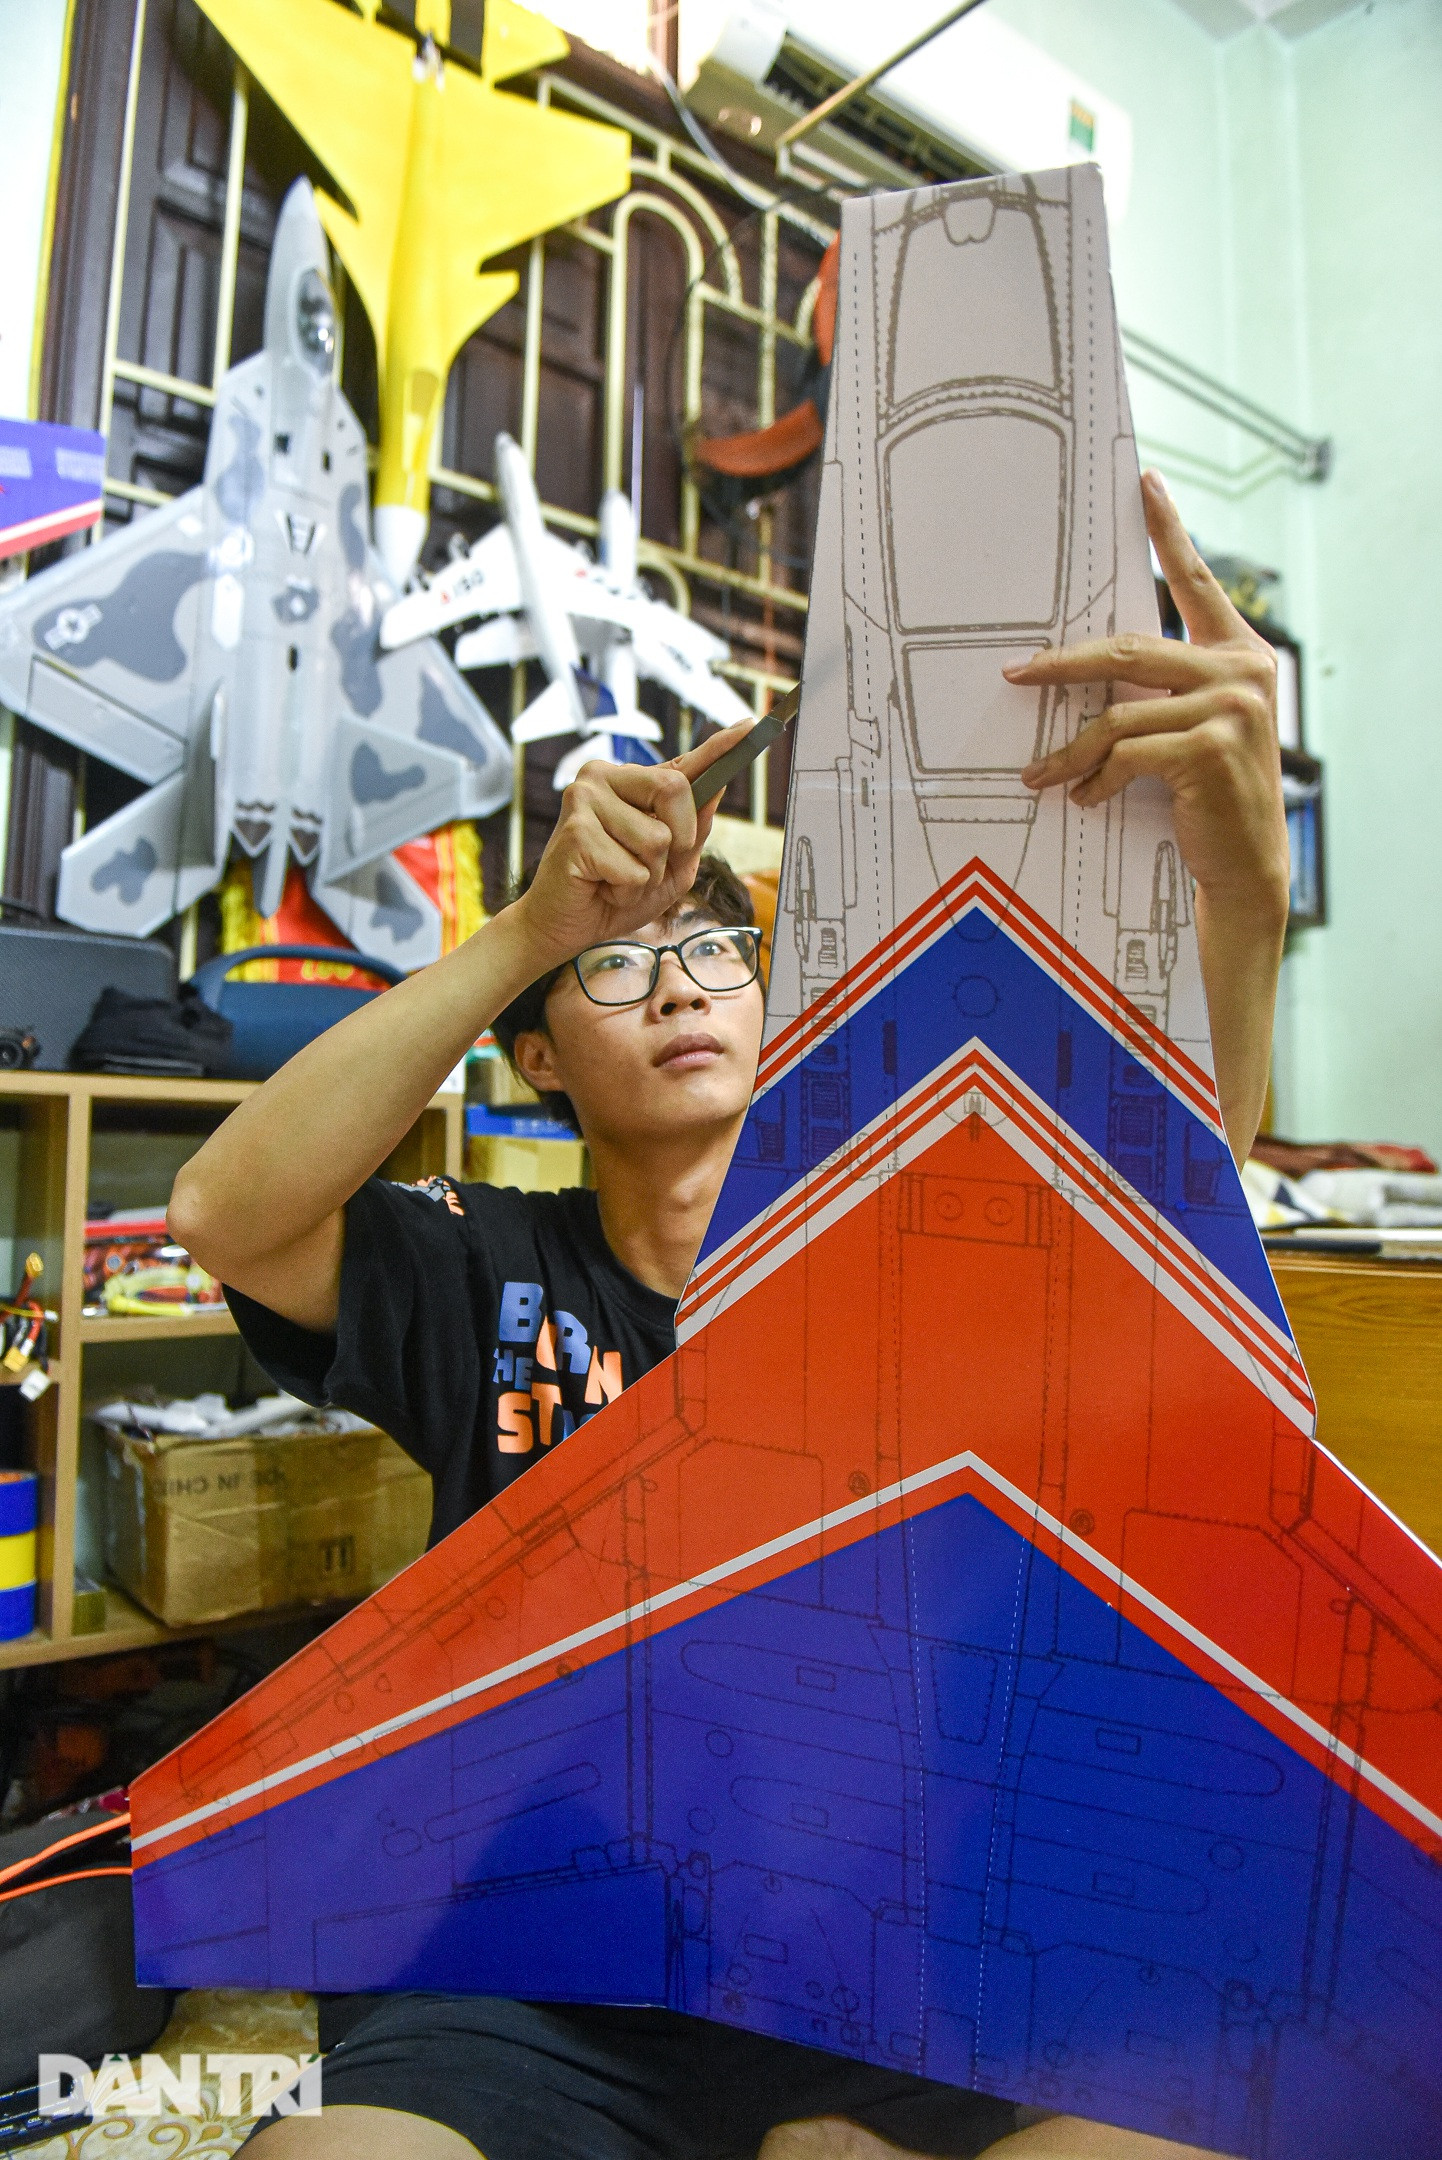 Bộ sưu tập mô hình máy bay khủng của chàng trai 10x ở Hà Nội gây sốt mạng - 5